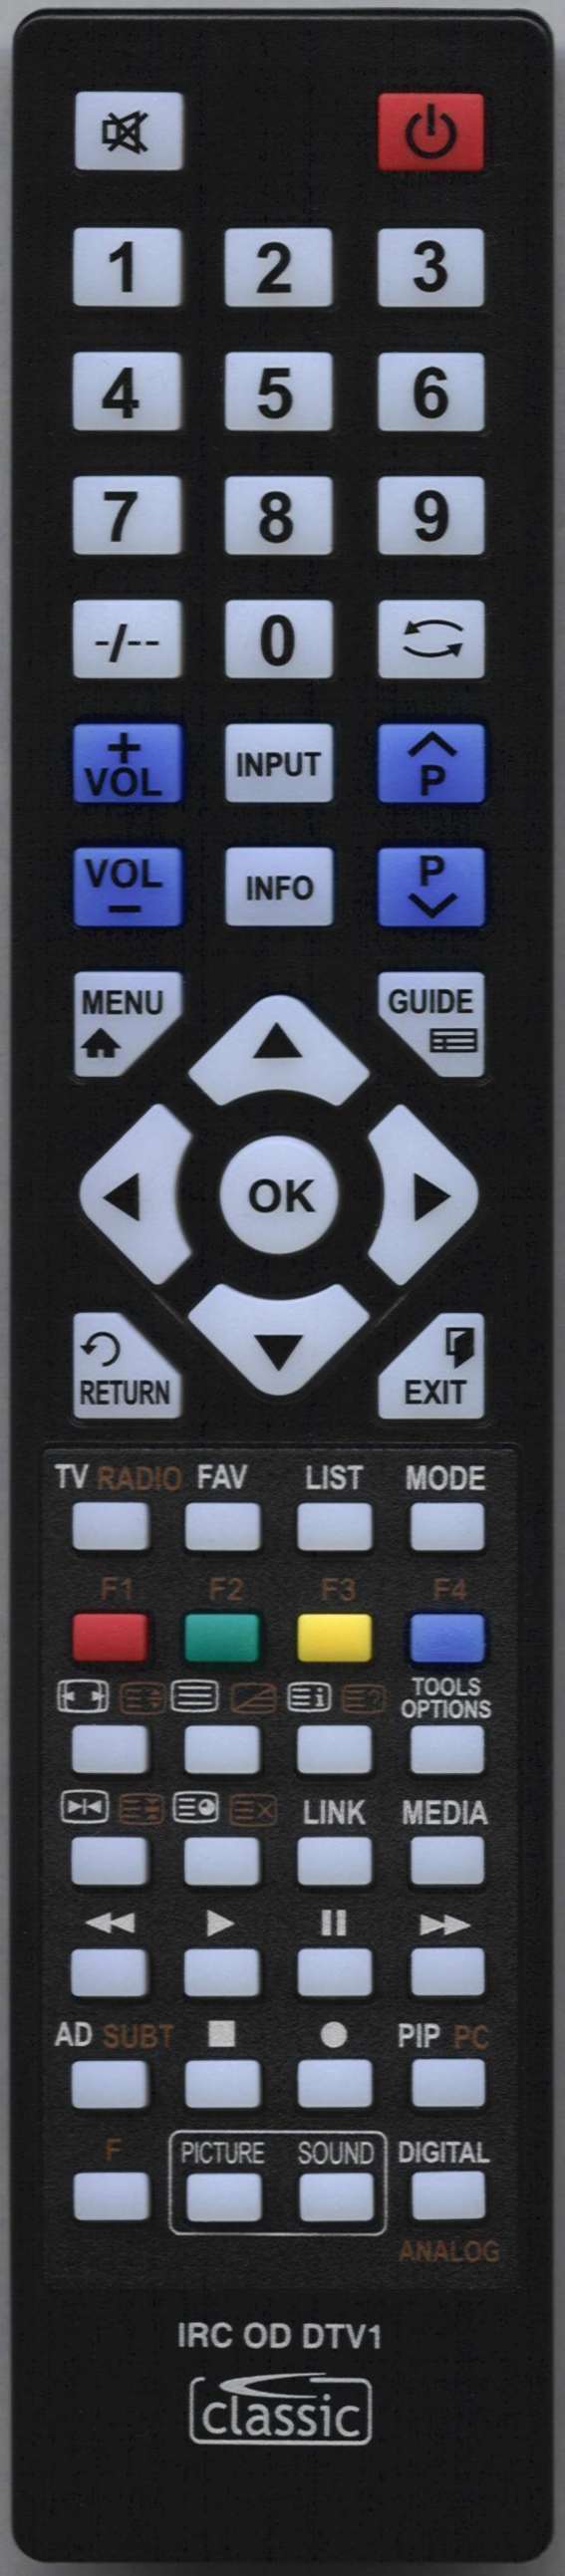 LG 65UM7450 Remote Control Alternative